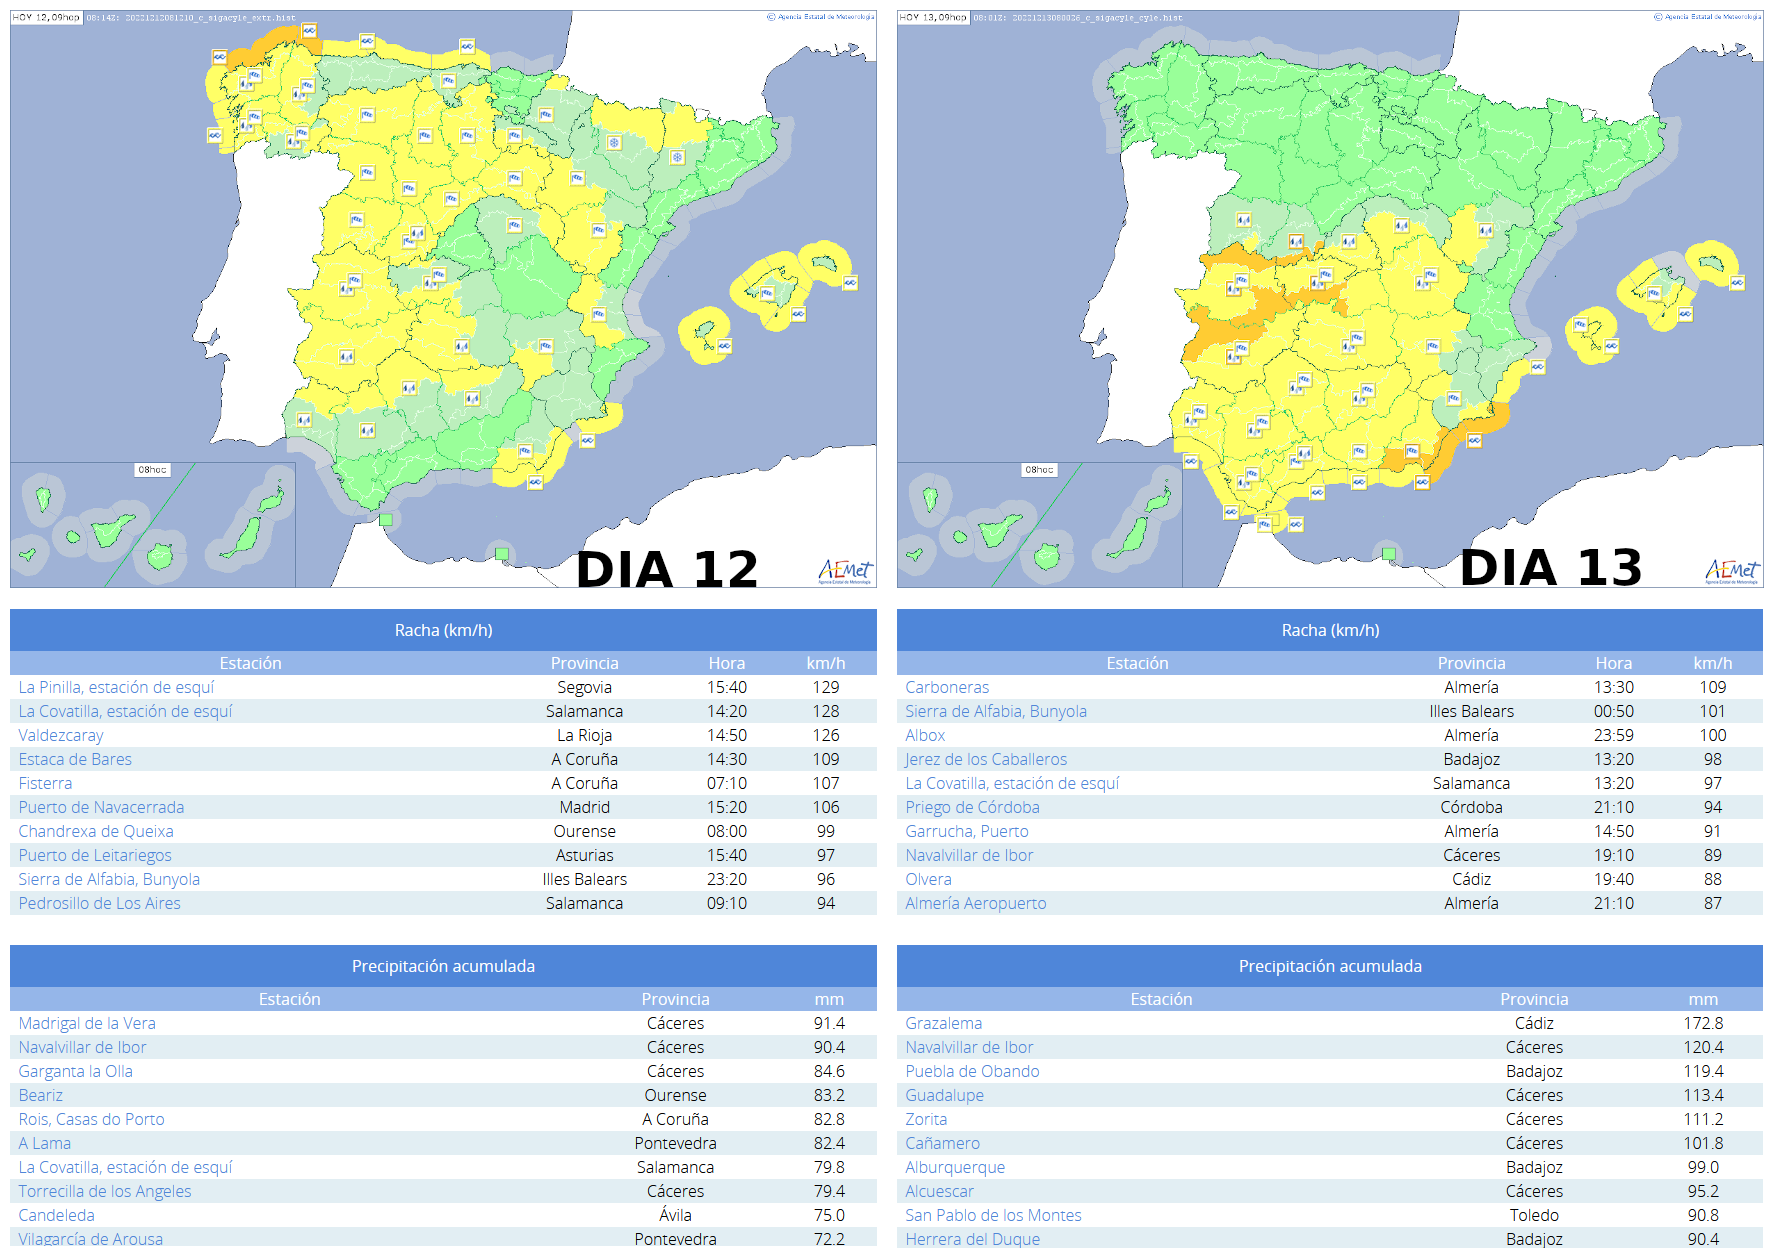 Avisos emitidos para el territorio peninsular y Baleares, así como los principales registros de rachas maximas y prcipitaciones acumuladas en 24 horas en estaciones de AEMET a lo largo de los días 12 y 13 de diciembre.